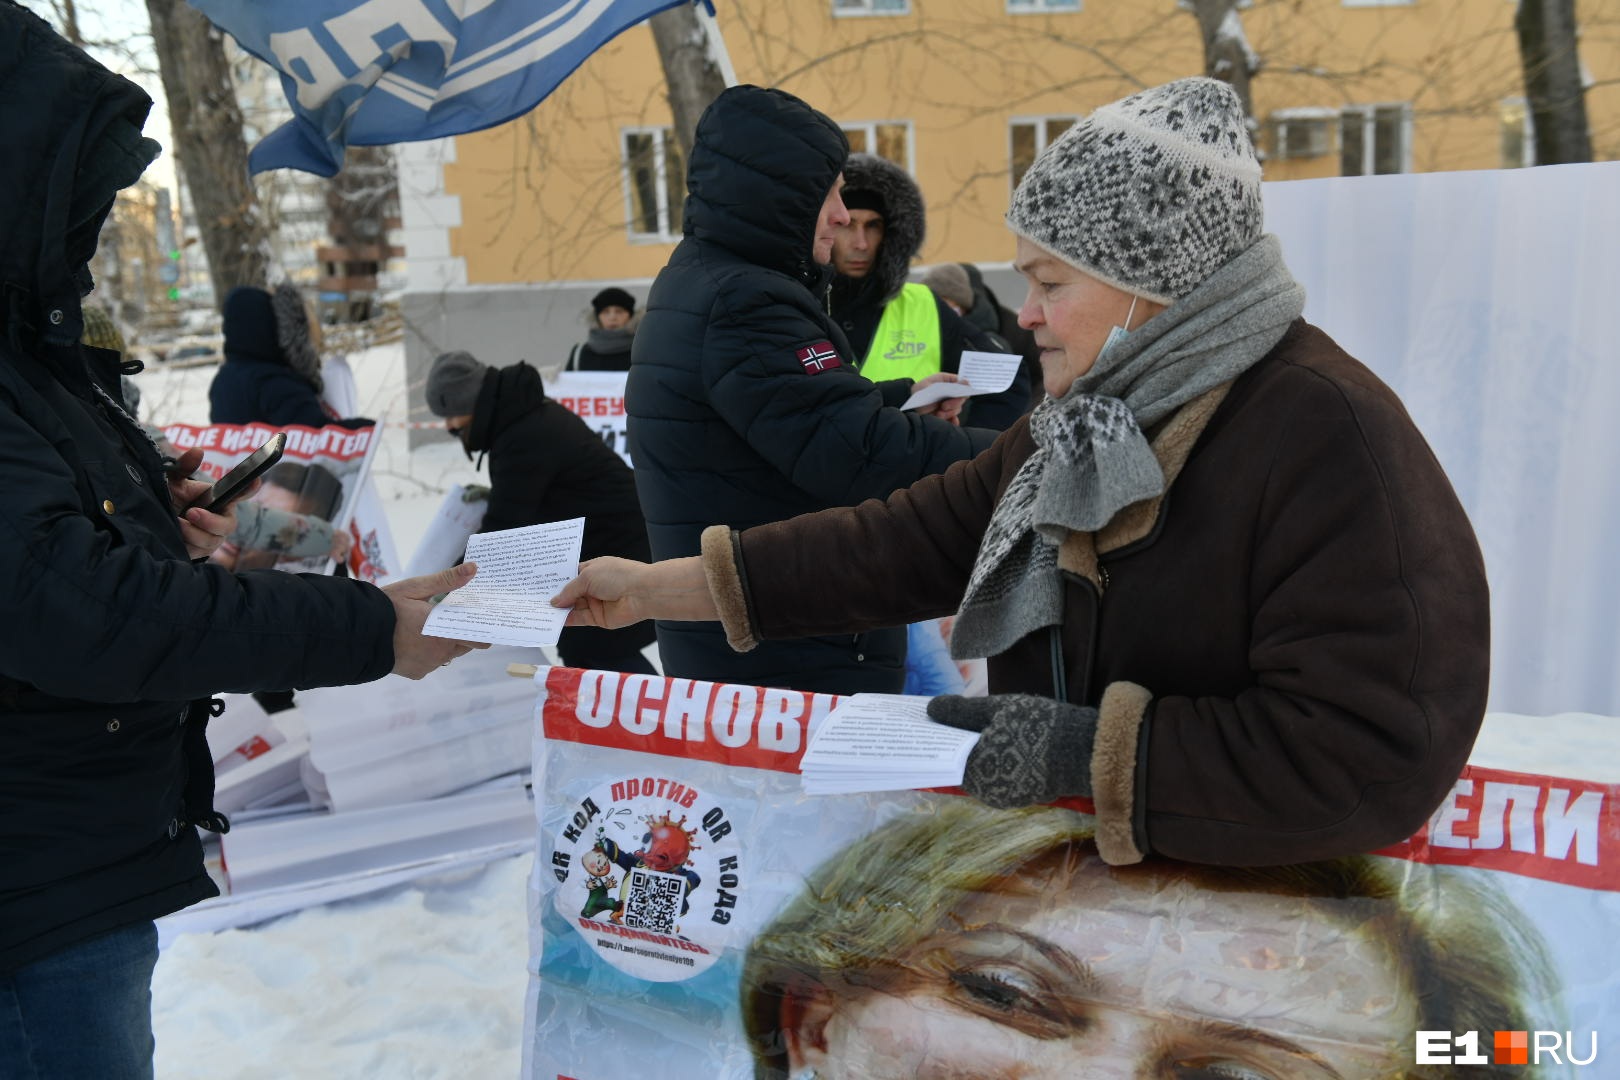 Неожиданно в повестку пикета ворвались листовки со словами поддержки народу Казахстана